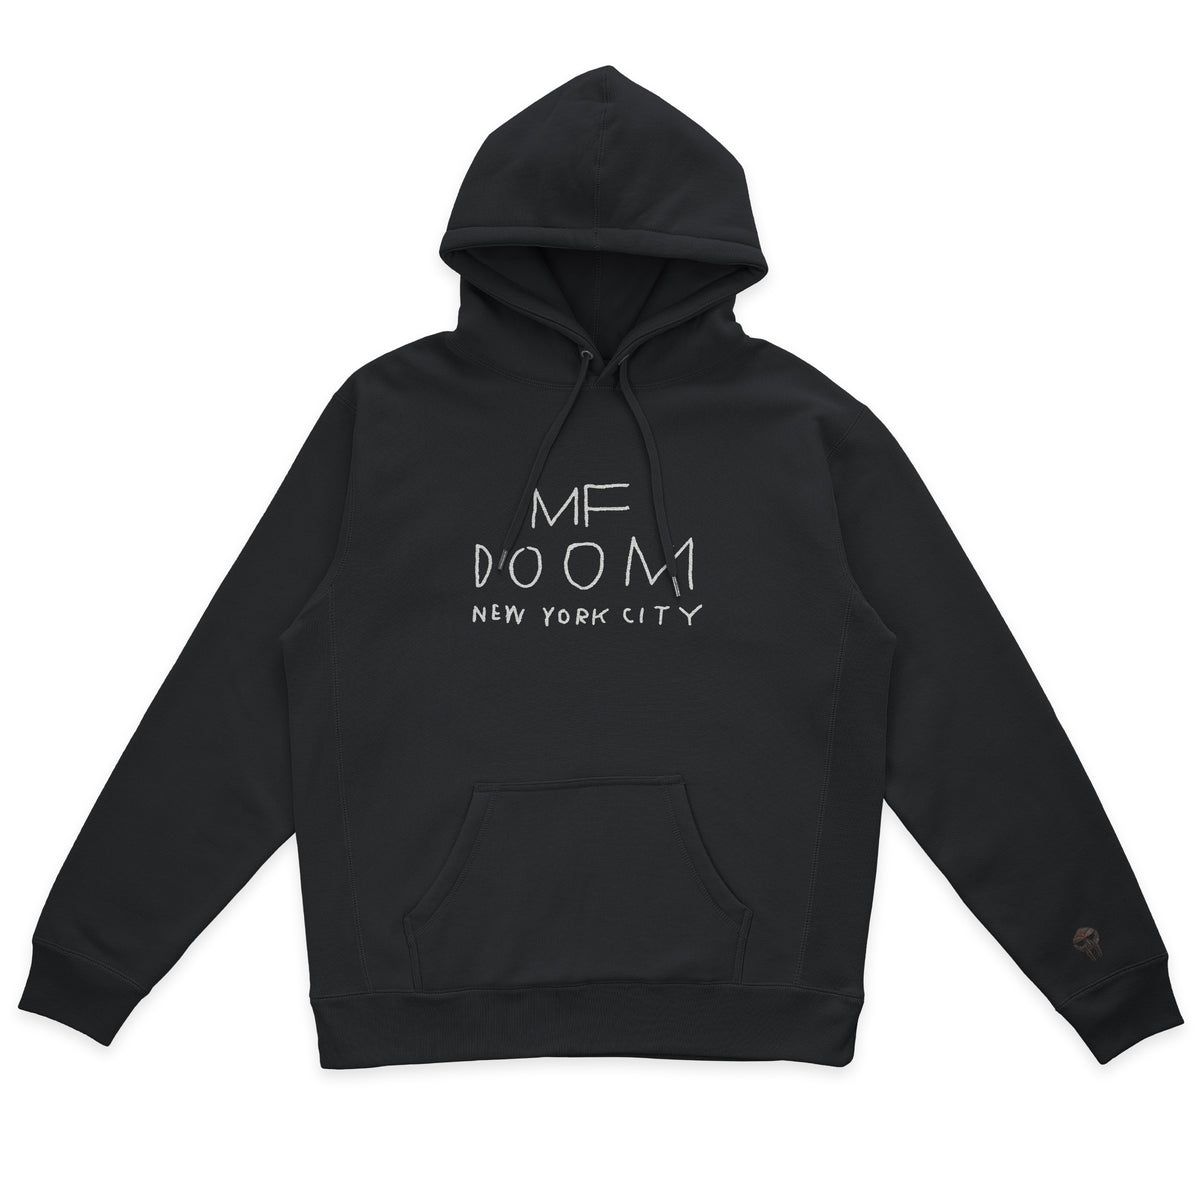 MF DOOM Hooded Sweatshirt